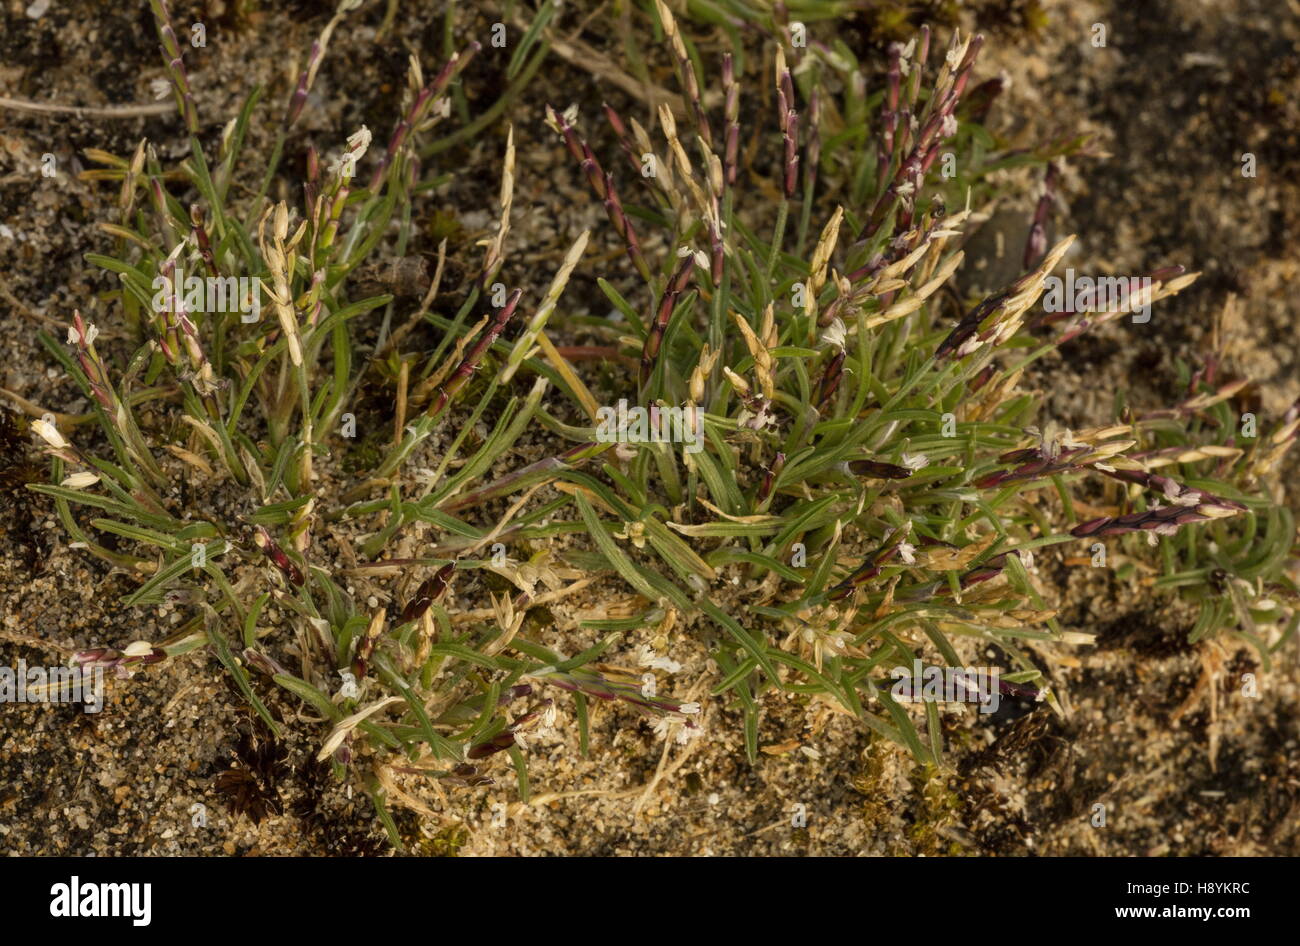 Early sand-grass, Mibora minima, in flower on sand dunes, late winter. Stock Photo